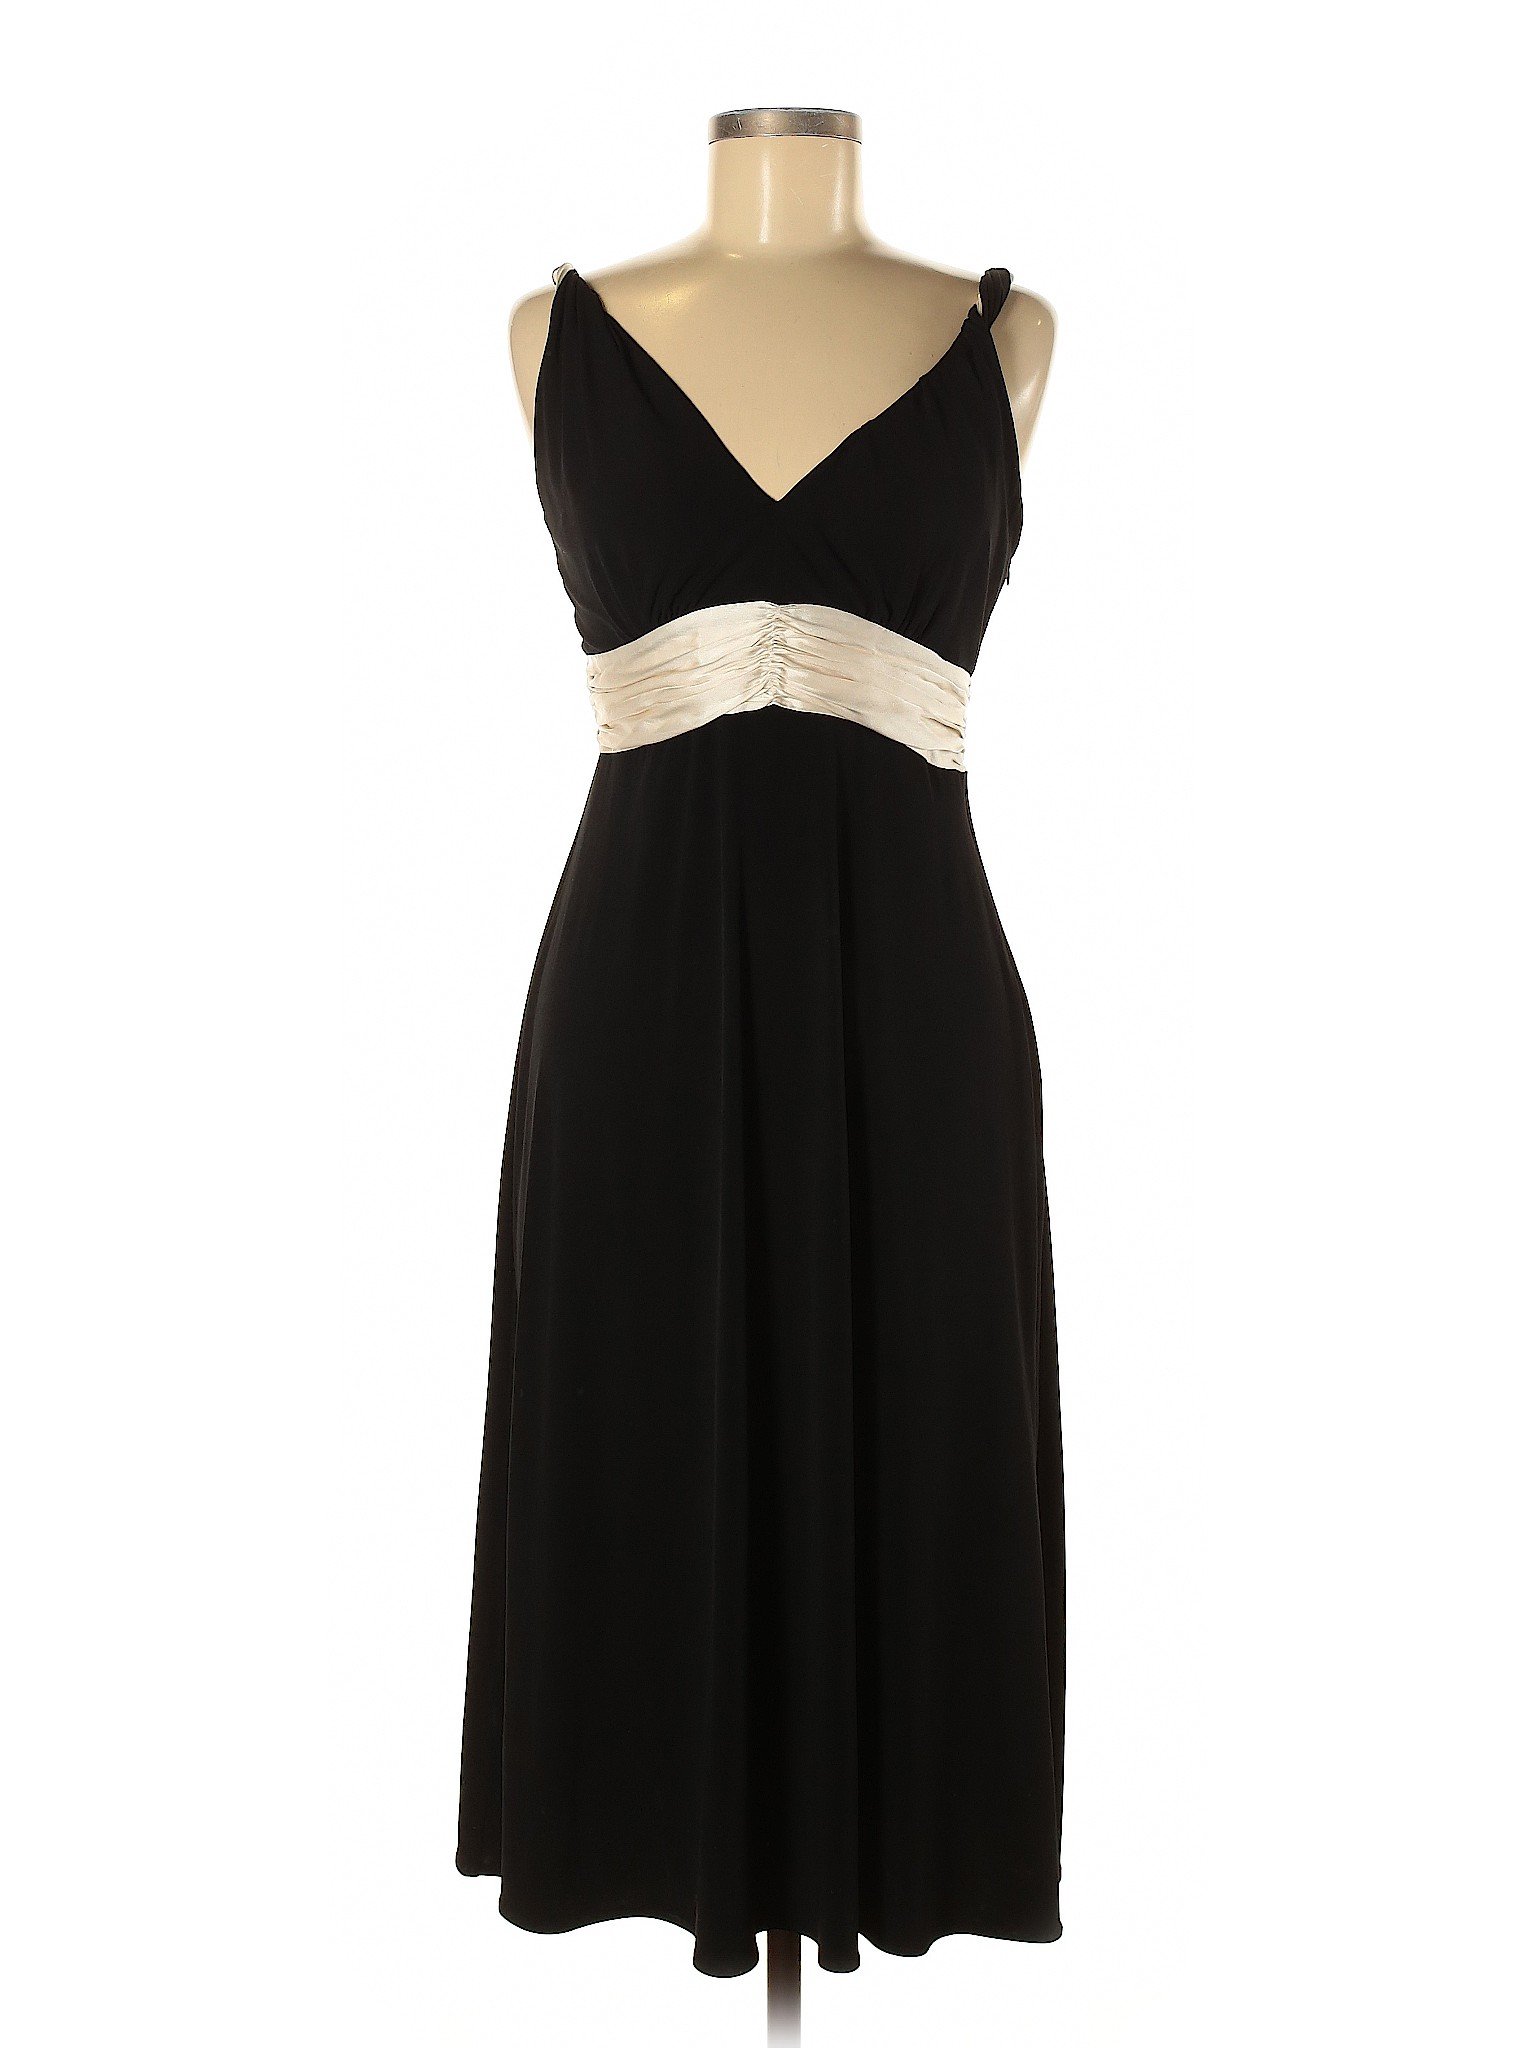 Calvin Klein Women Black Cocktail Dress 6 | eBay